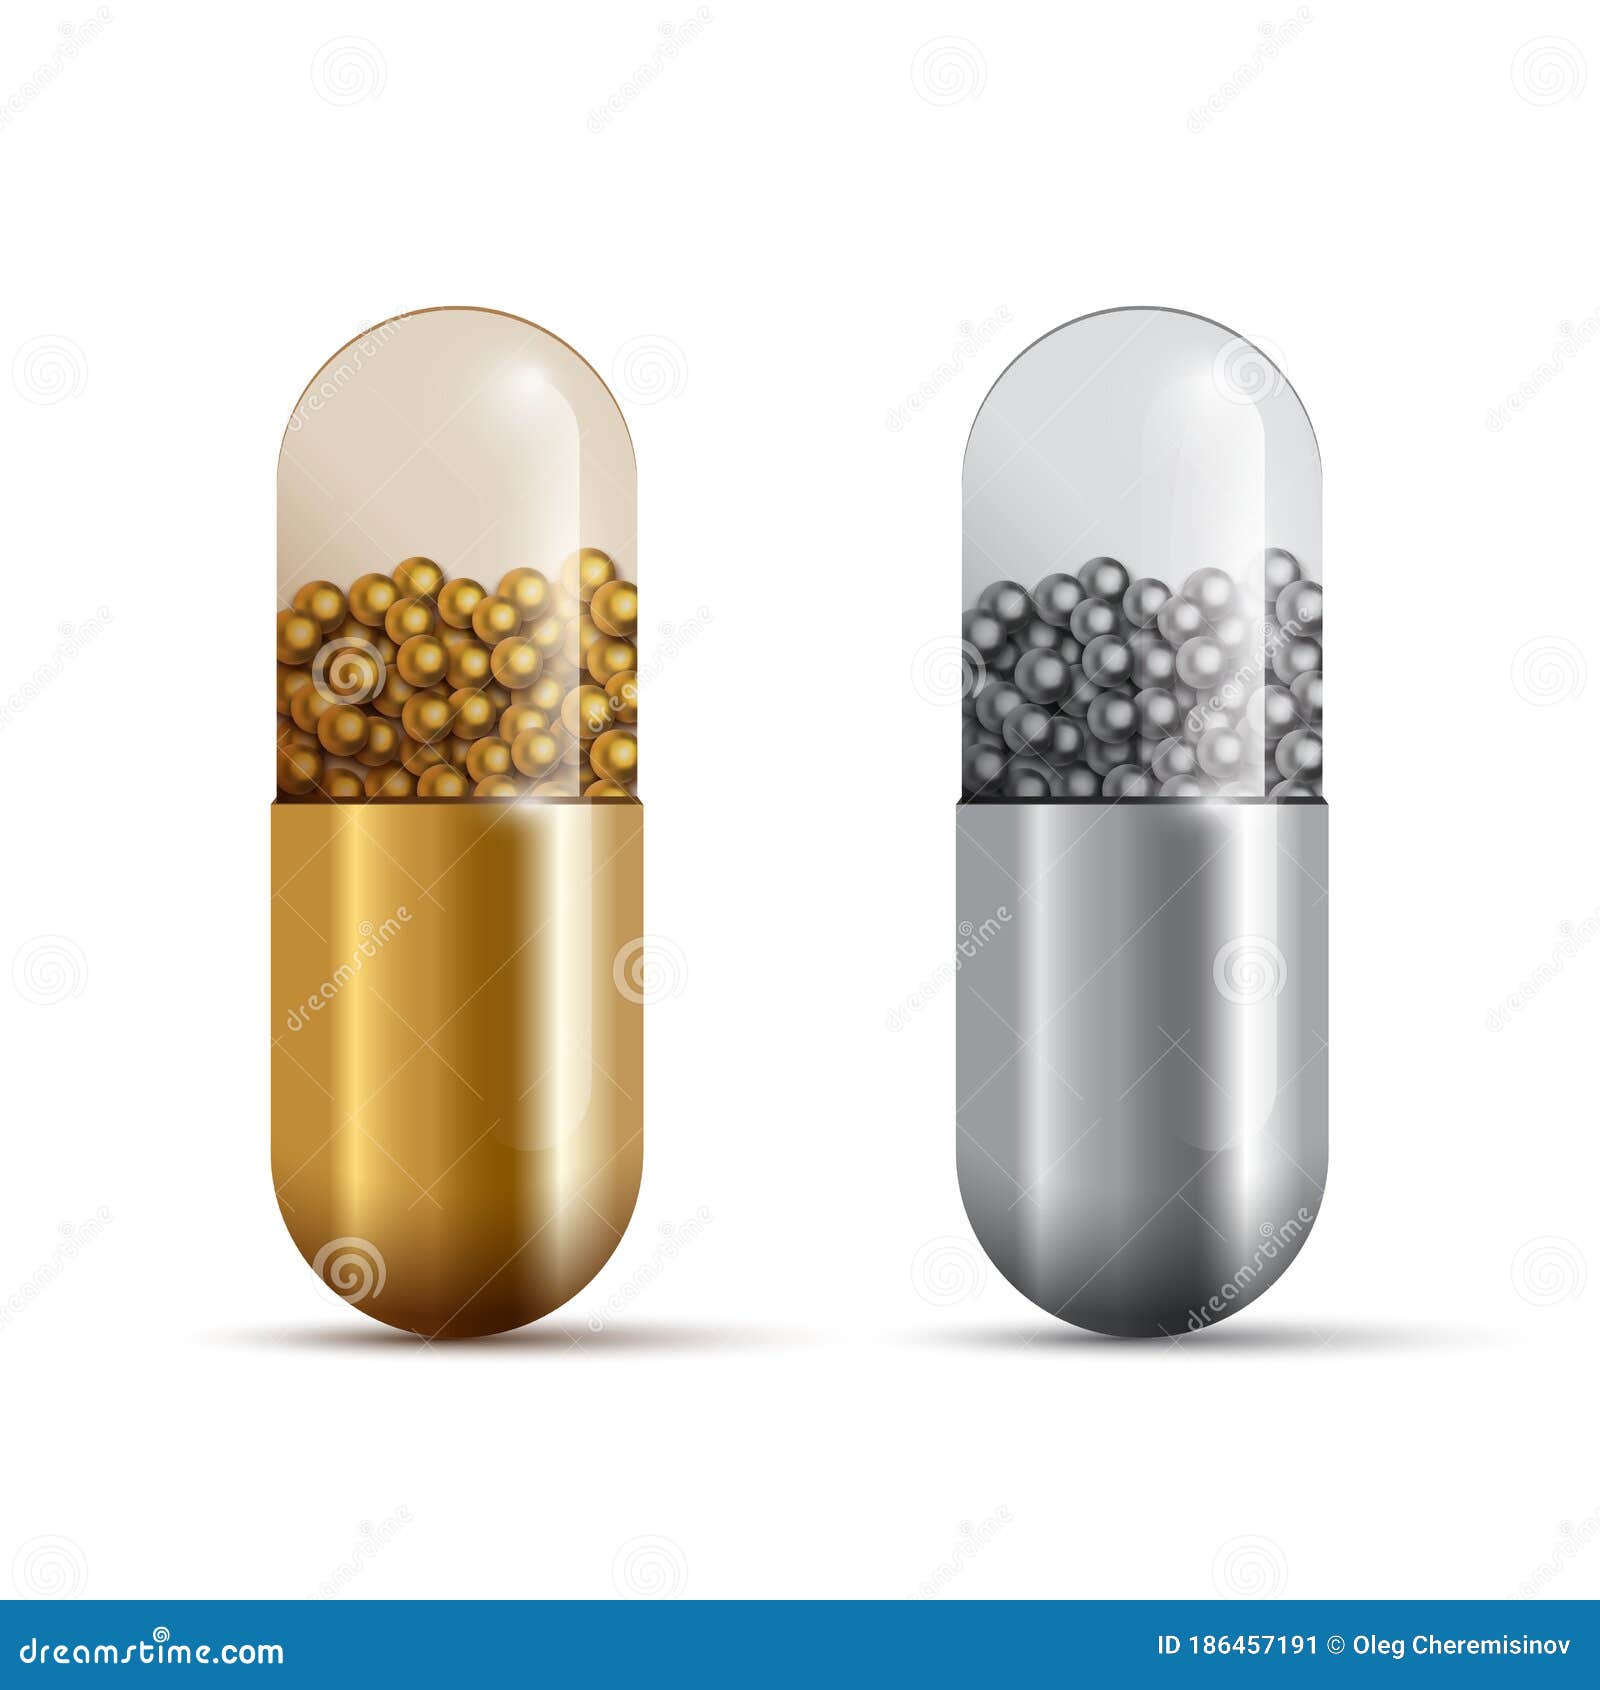 Hãy cùng trải nghiệm hình ảnh về vật dụng y tế Capsule Pills Isolated. Loại thuốc này không chỉ là vật dụng cần thiết trong cuộc sống hàng ngày, mà còn là sự cầu kỳ của từng nhà sản xuất, với những tác dụng khác nhau. Hình ảnh sẽ giúp bạn hiểu rõ được các loại thuốc khác nhau và cách sử dụng chúng.